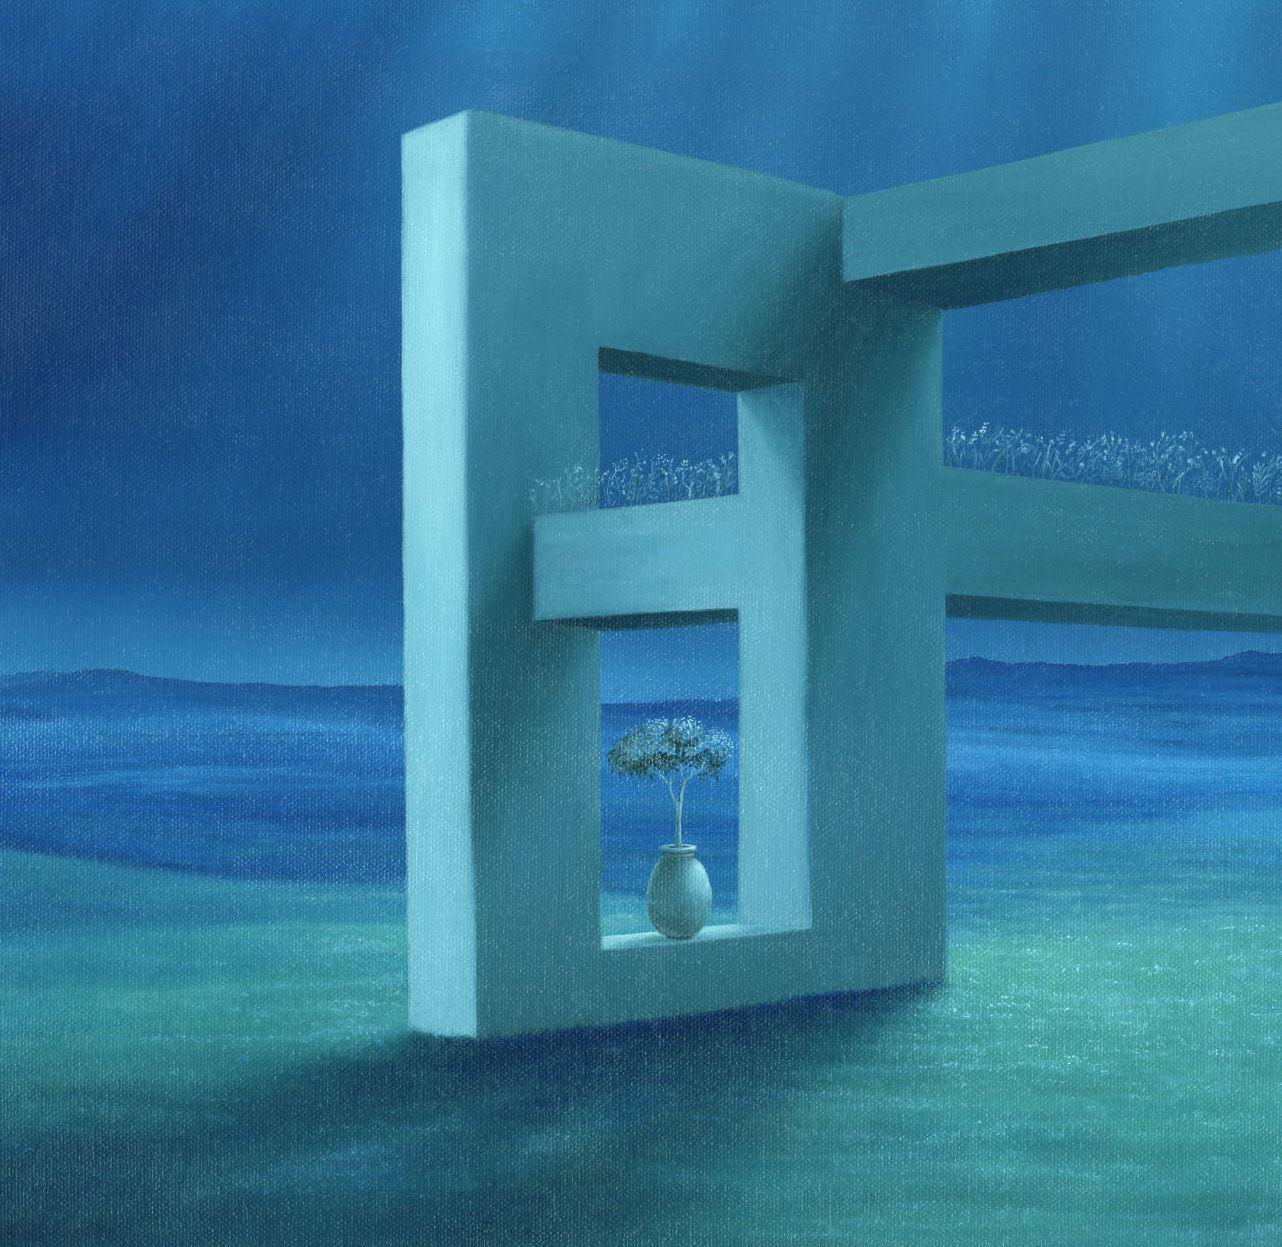 Murs impossibles, peinture bleue surréaliste contemporaine originale, 2022
24